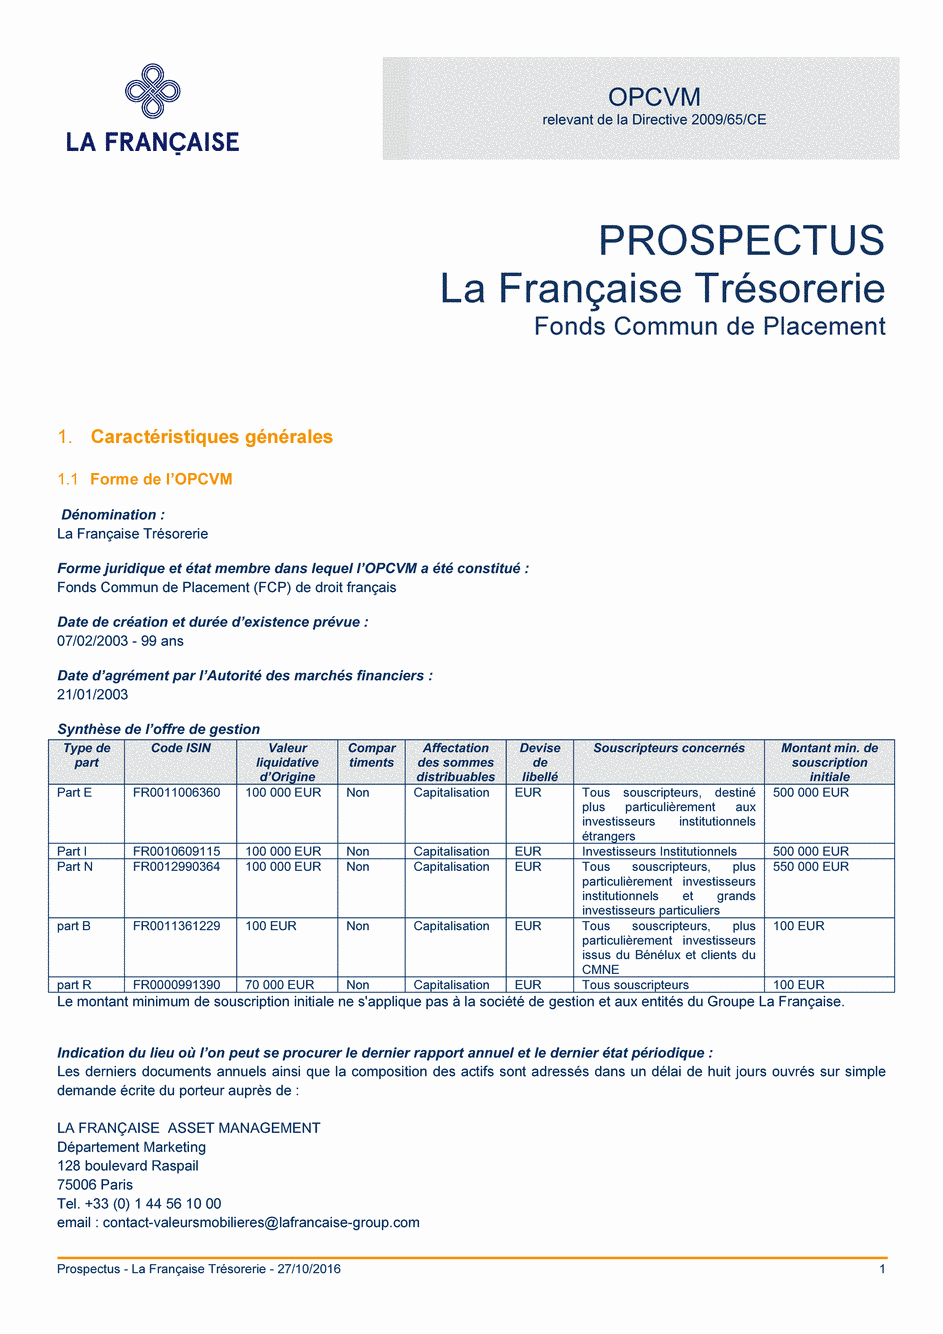 Prospectus La Française Trésorerie - Part N - 27/10/2016 - Français